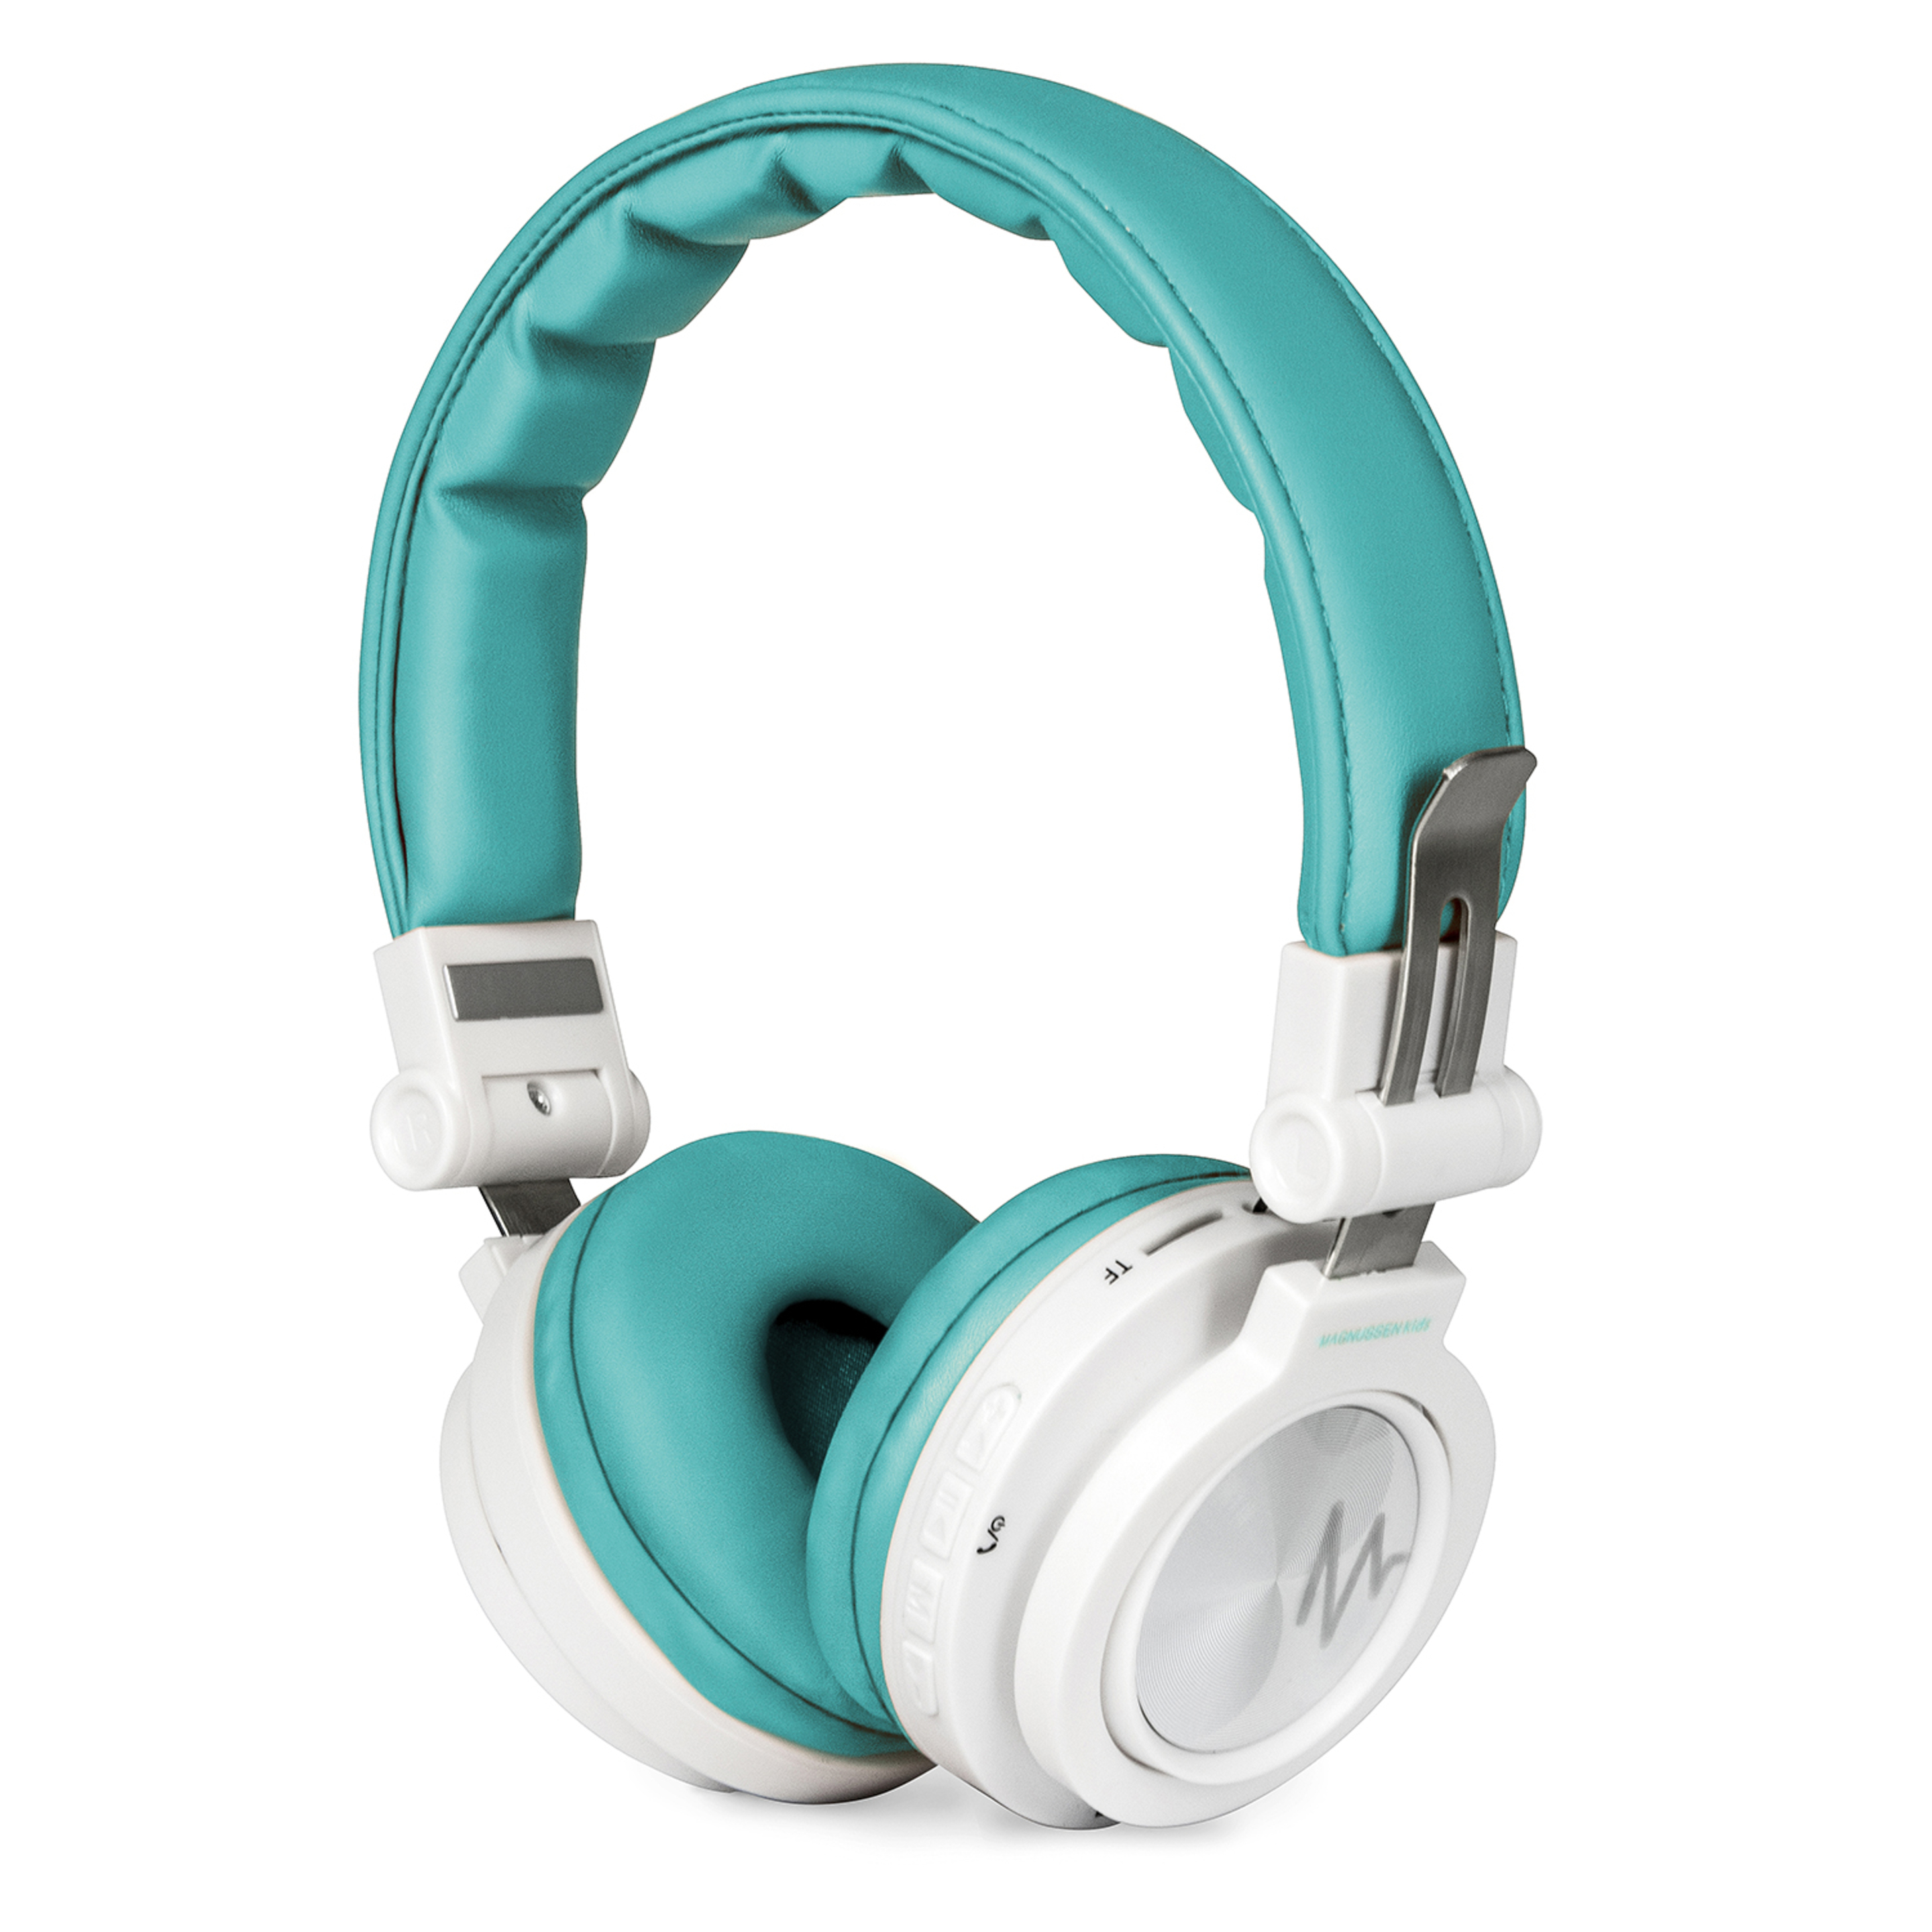 Auriculares Bluetooth Magnusen K1 - azul-turquesa - 